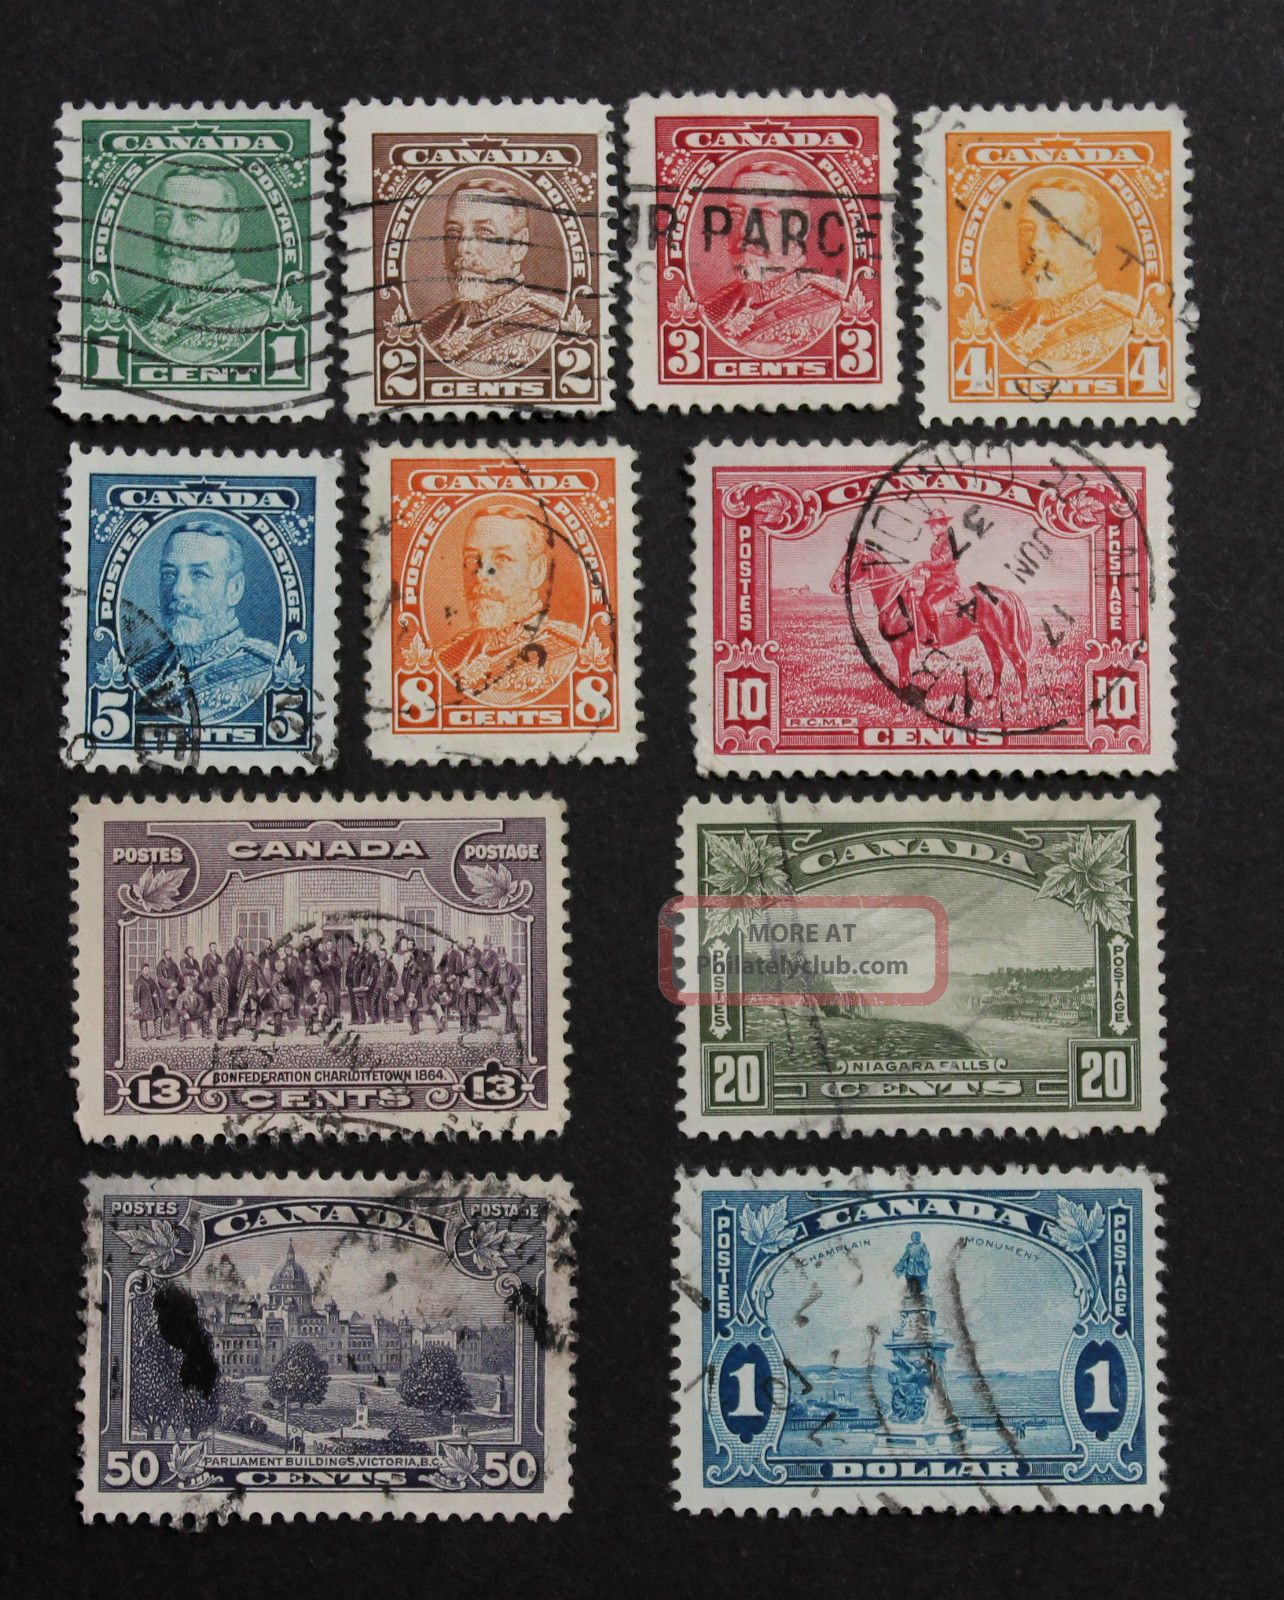 Stamp Canada Sc 217 - 27, 1935 1c - $1 King George V Definitives Complete